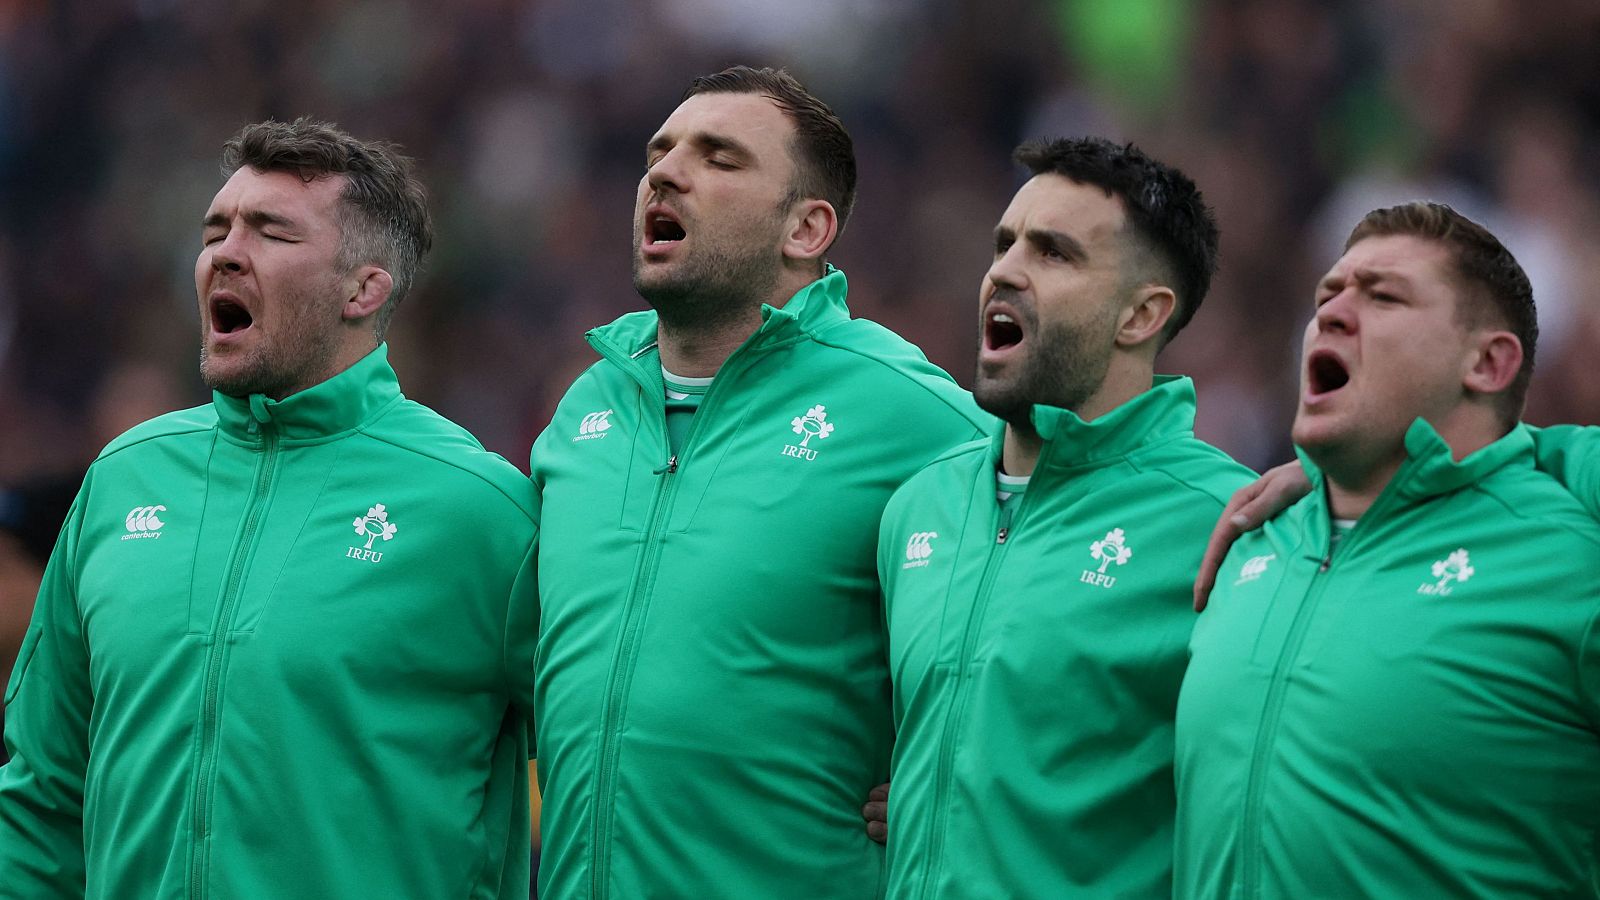 Irlanda, unida por el rugby